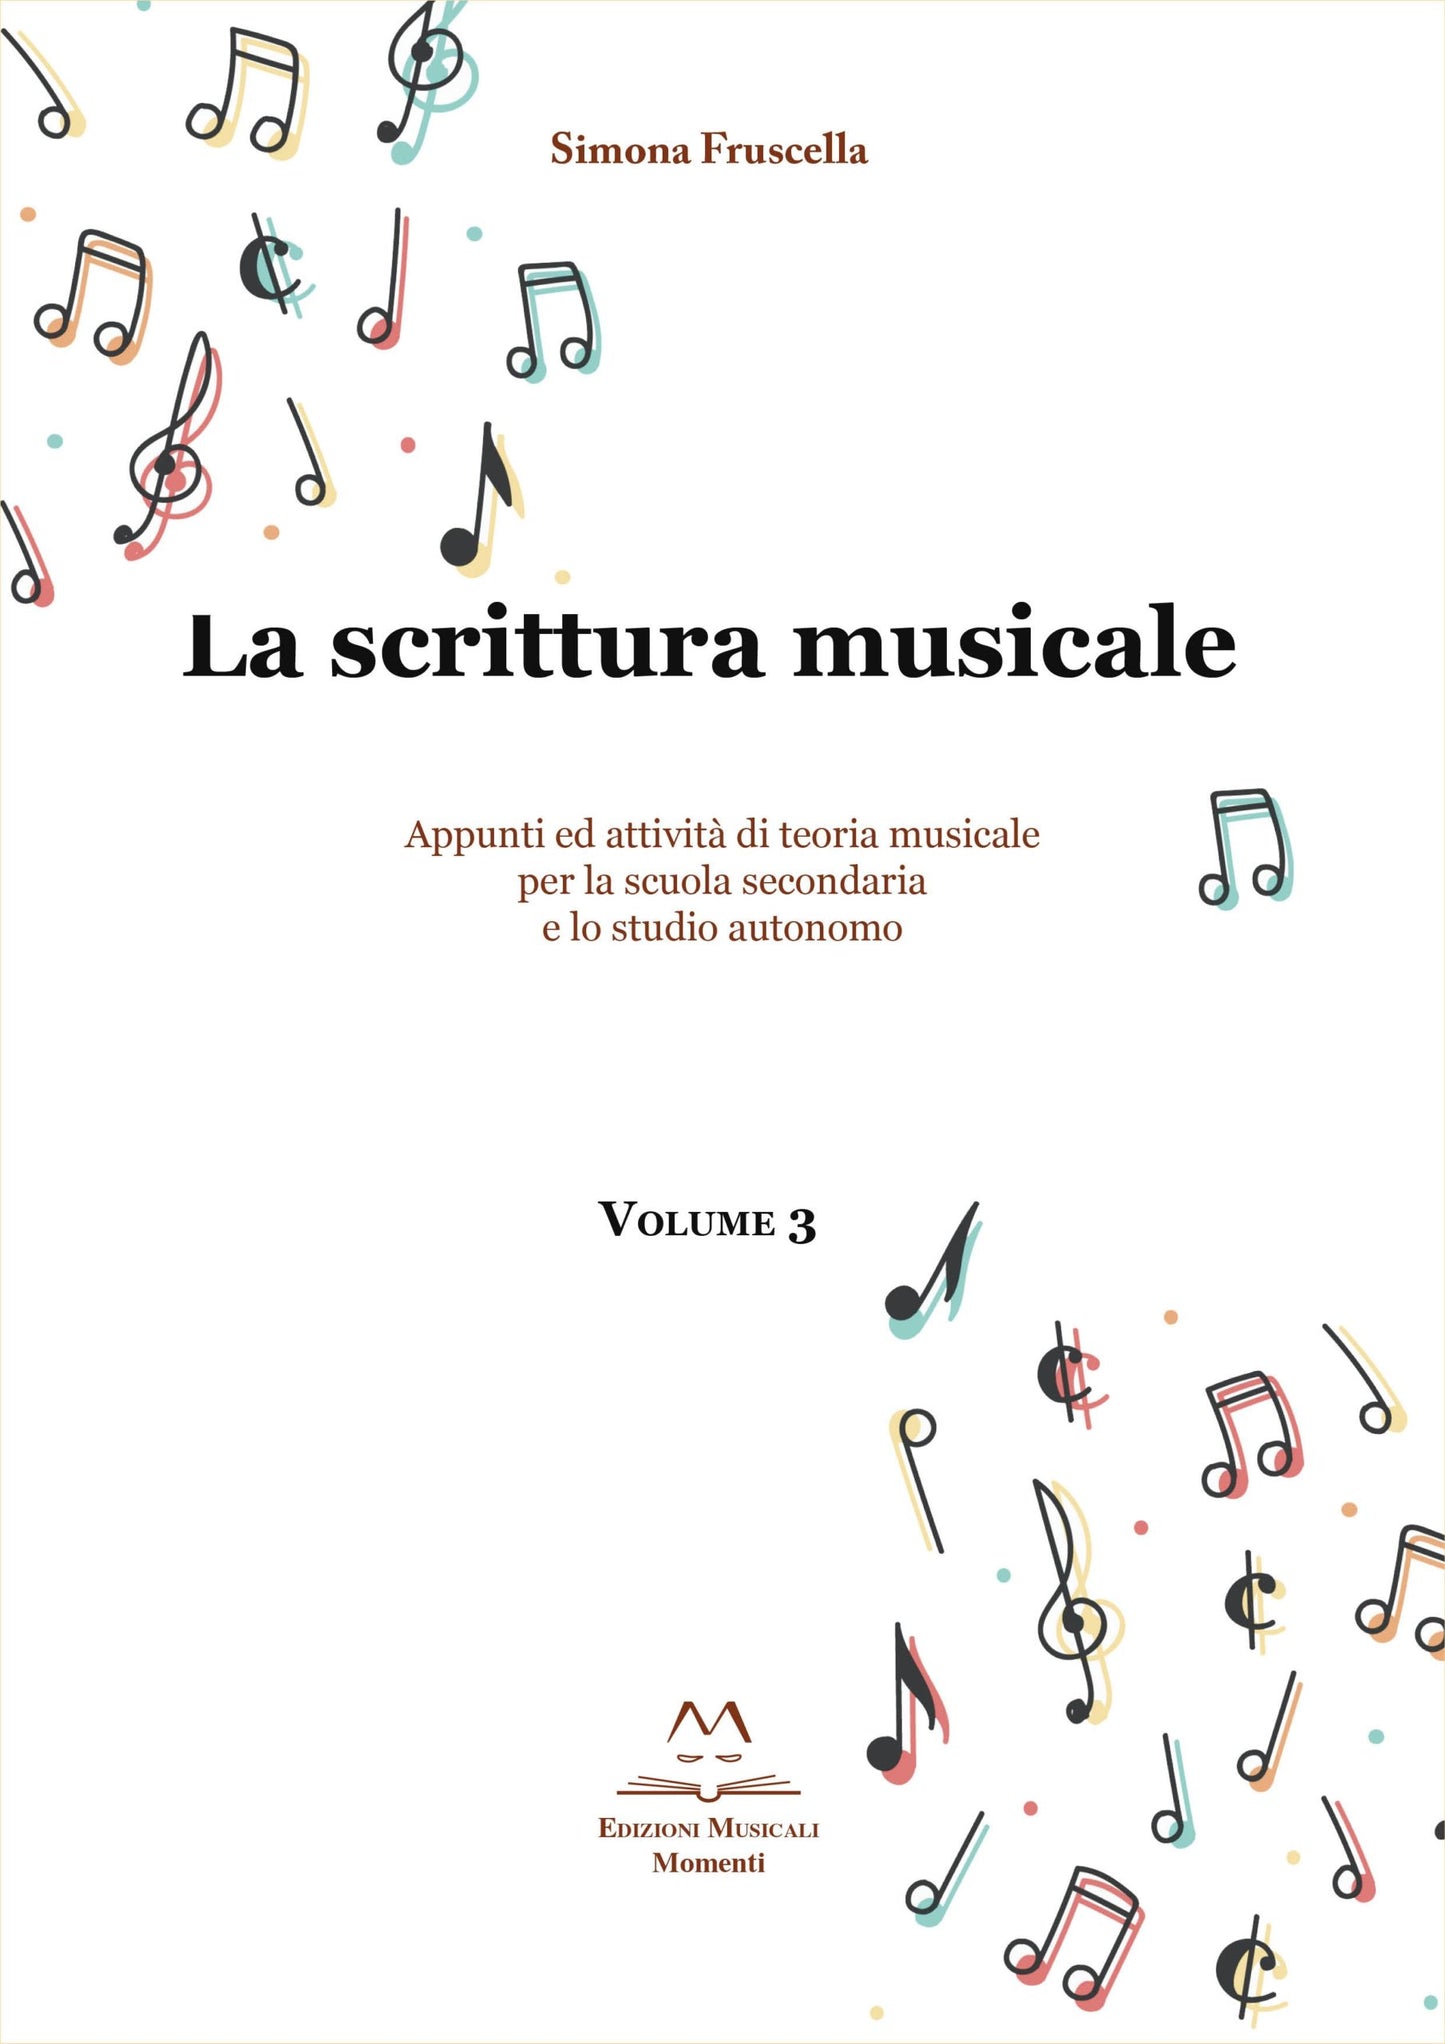 La scrittura musicale Vol.3 di Simona Fruscella